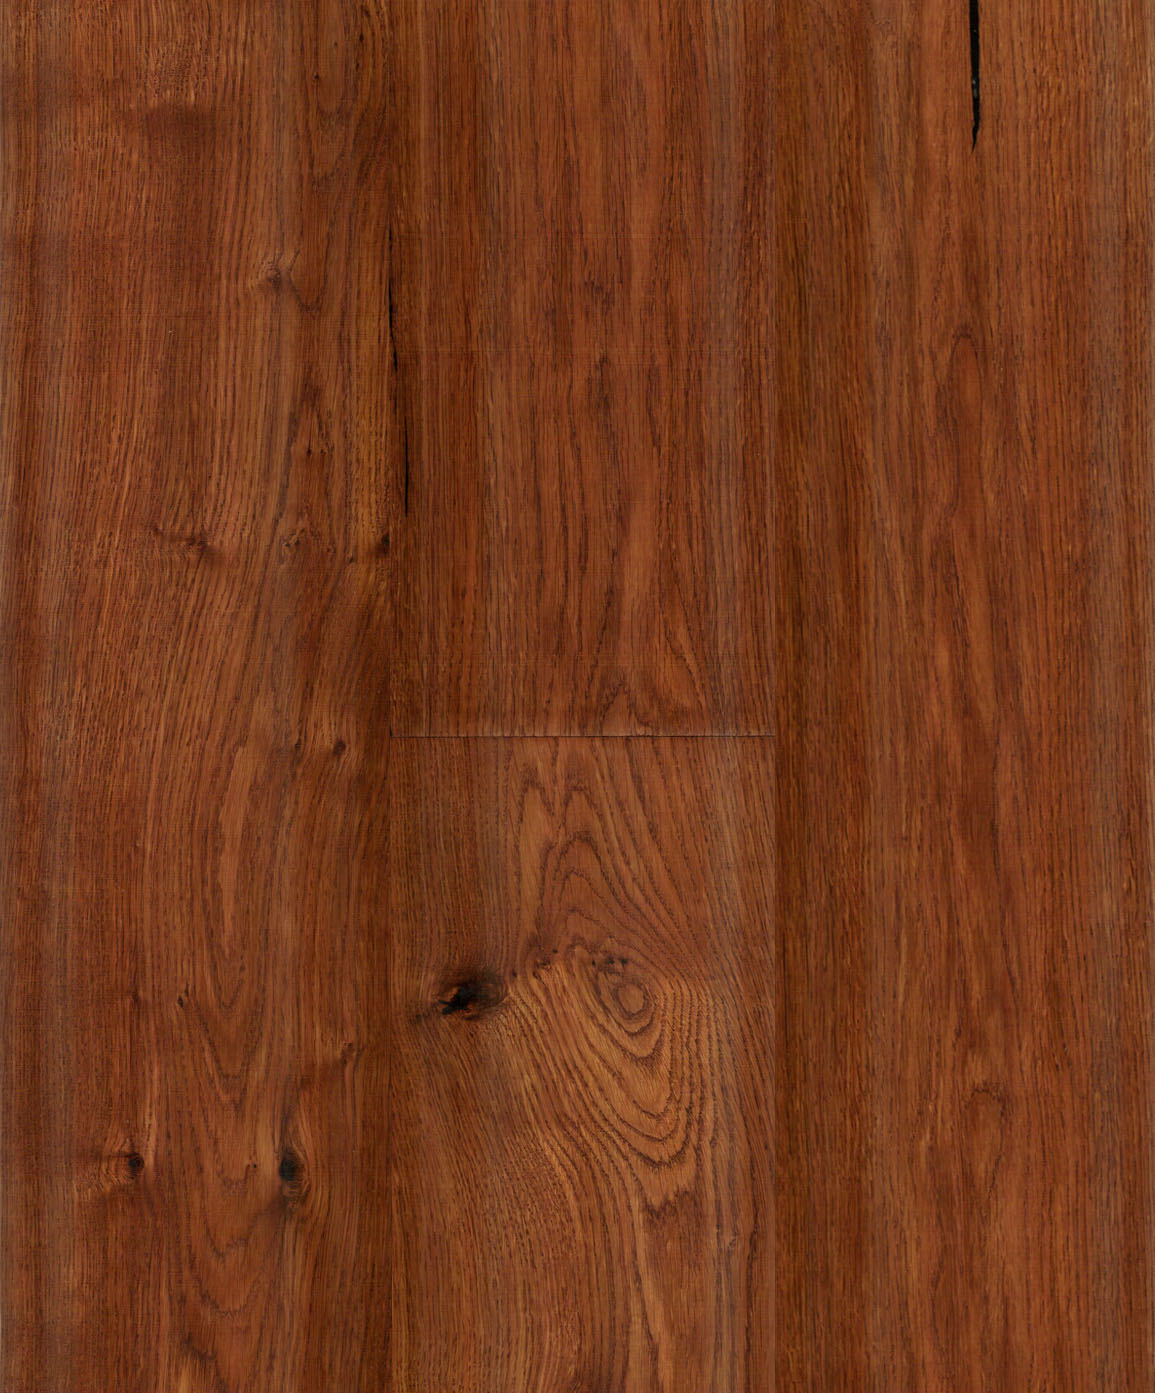 Vintage-Oak-Brown-Hardwood-Flooring-TG9202